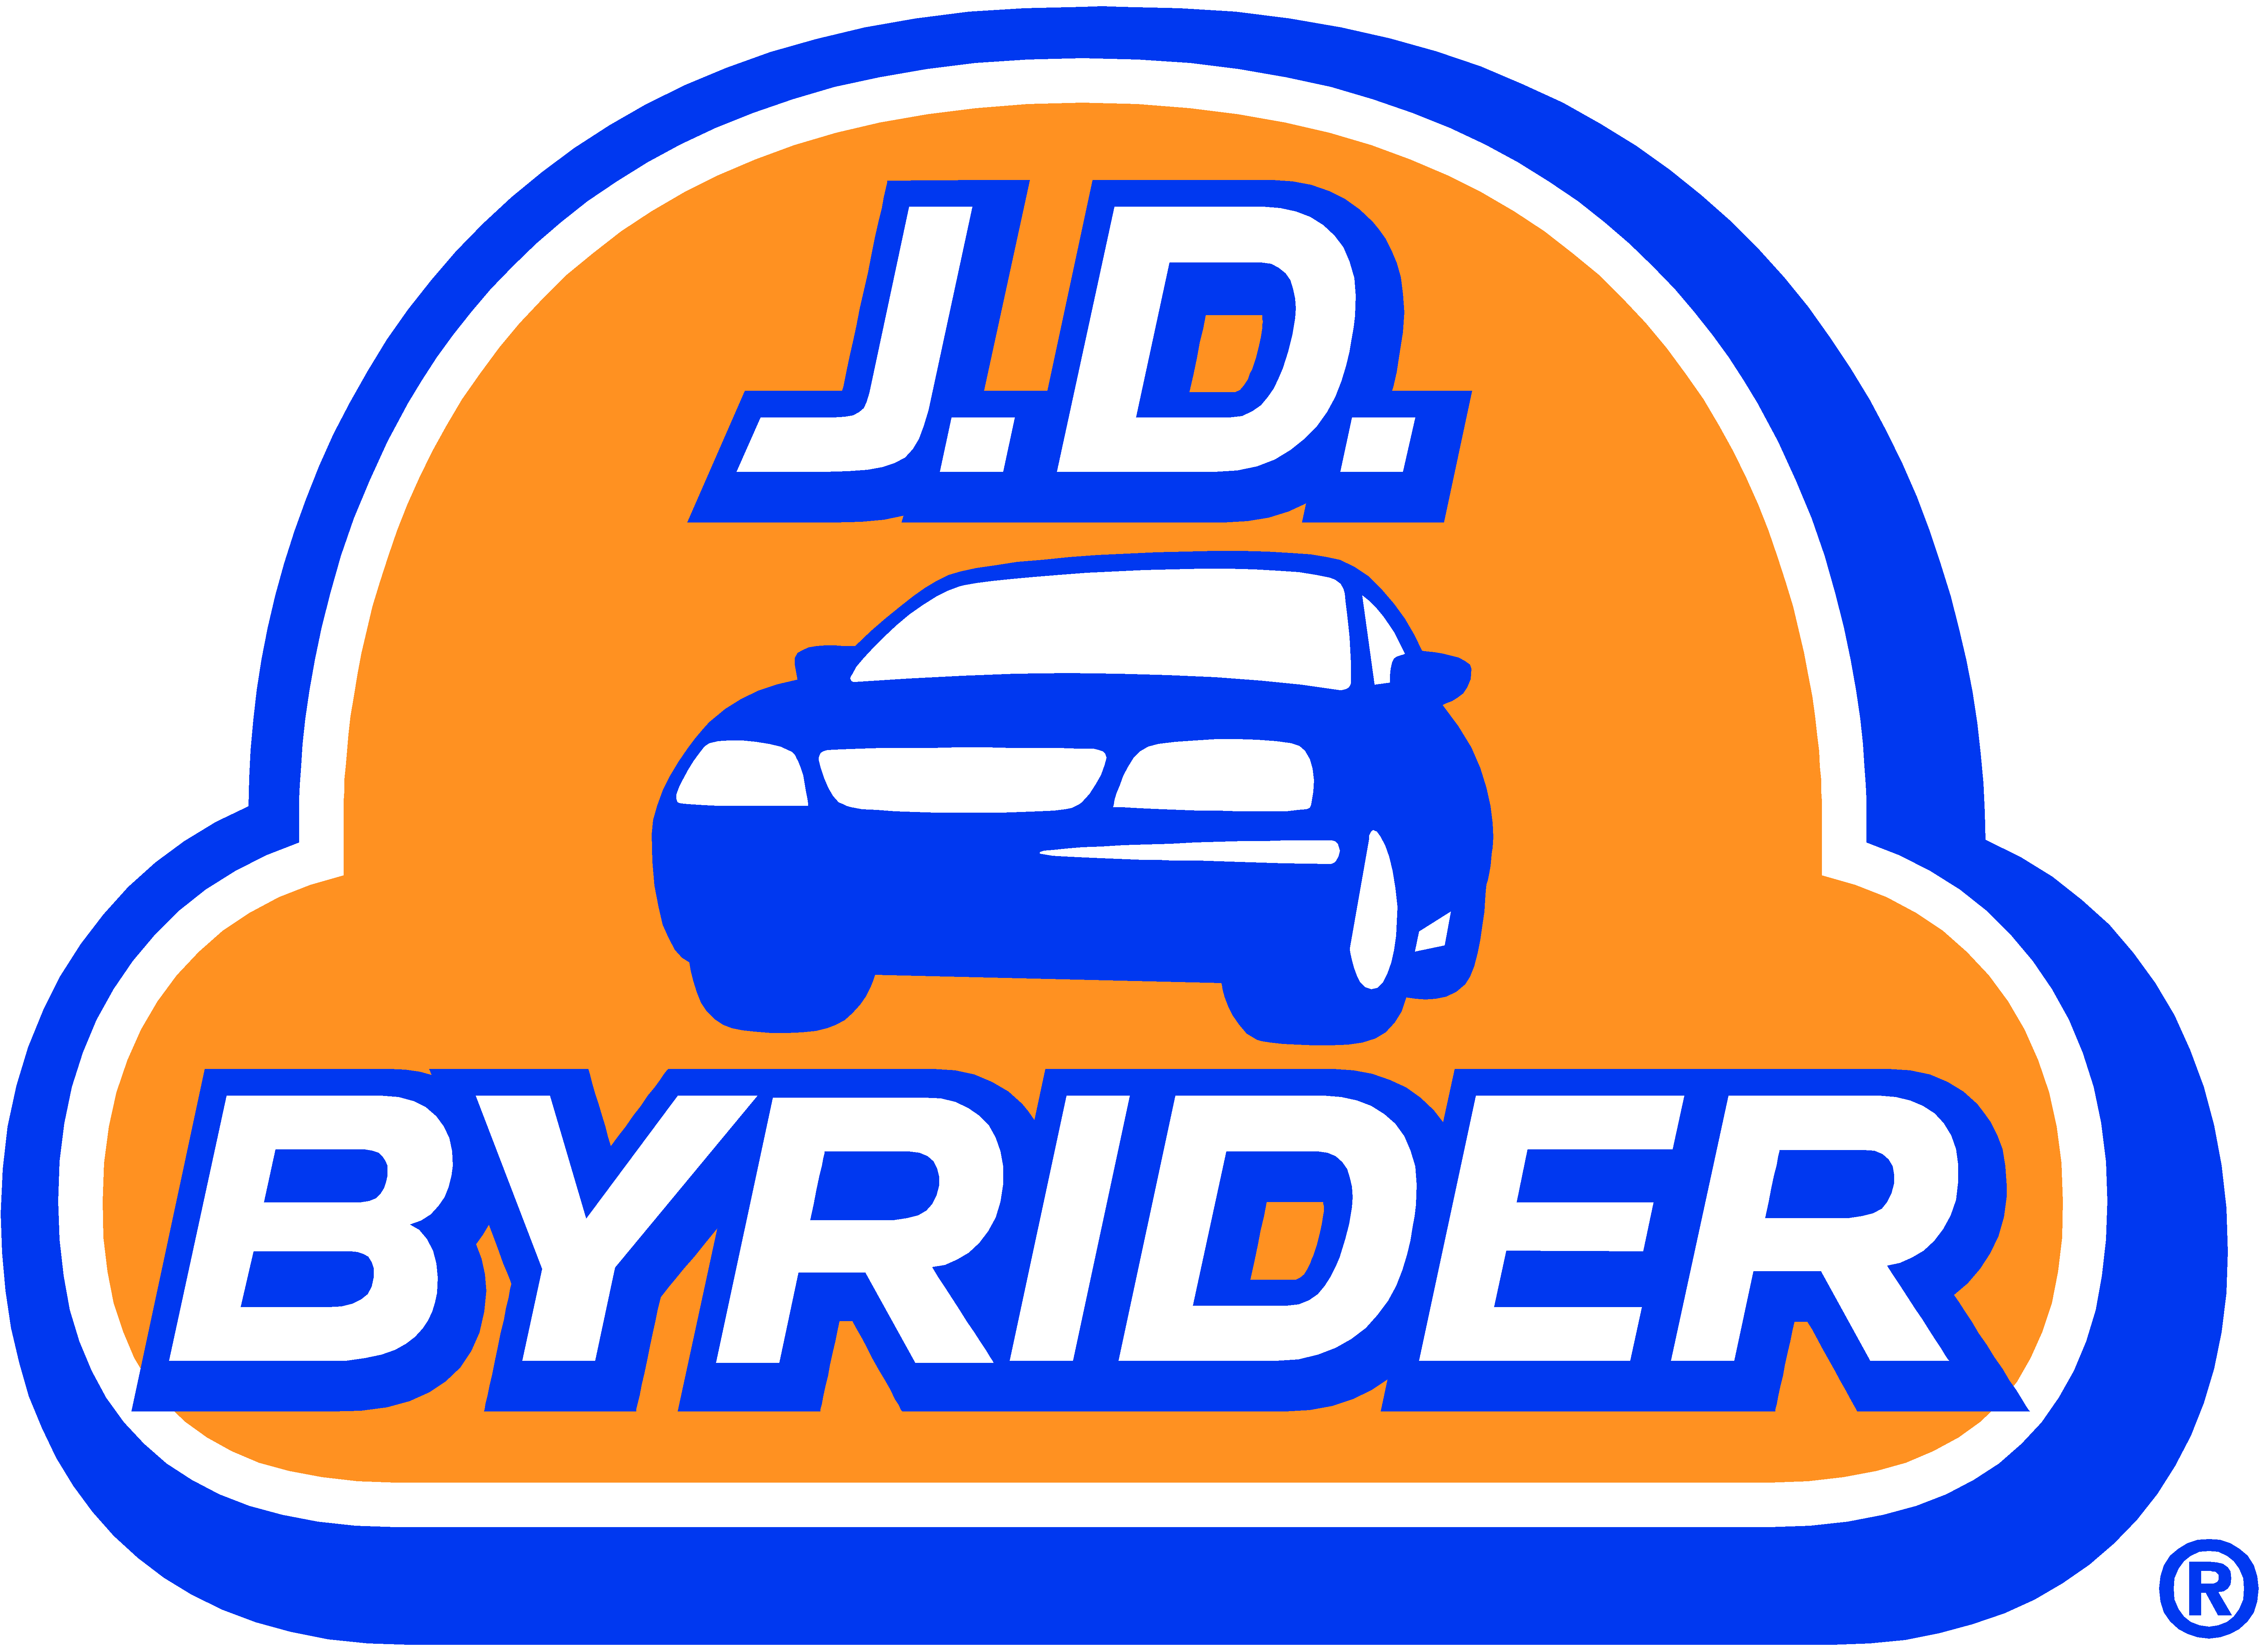 J.D. Byrider 